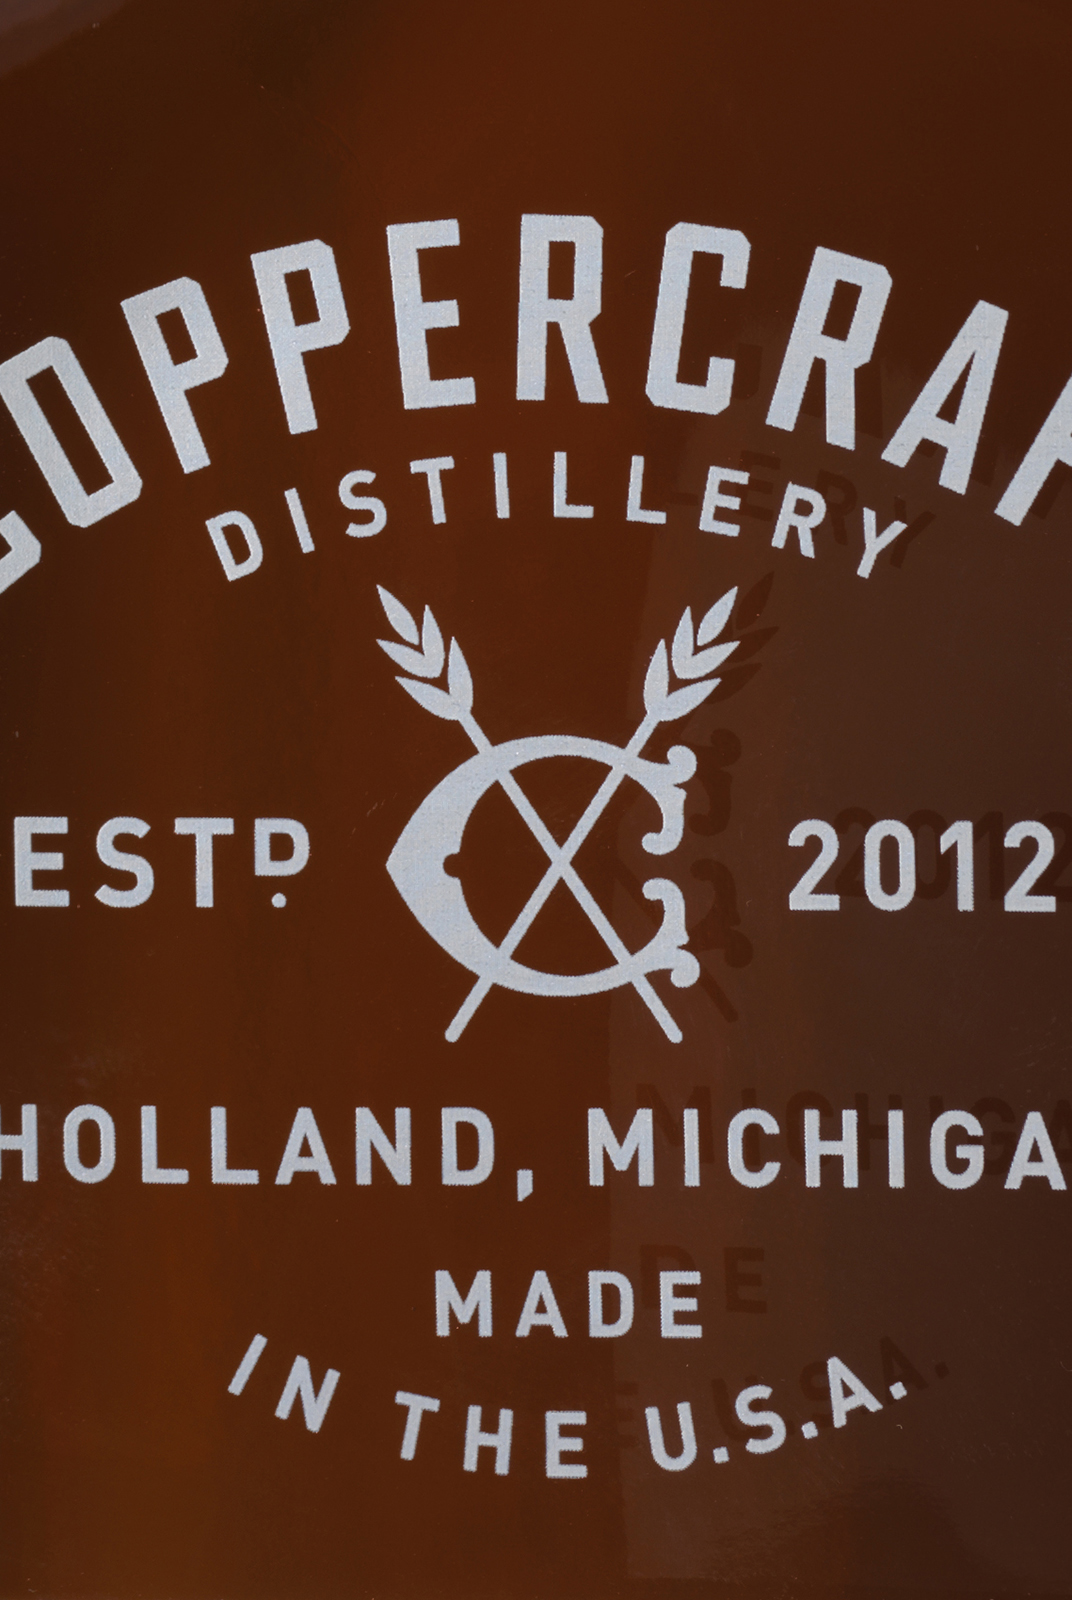 Coppercraft Distillery Screenprint Design Detail